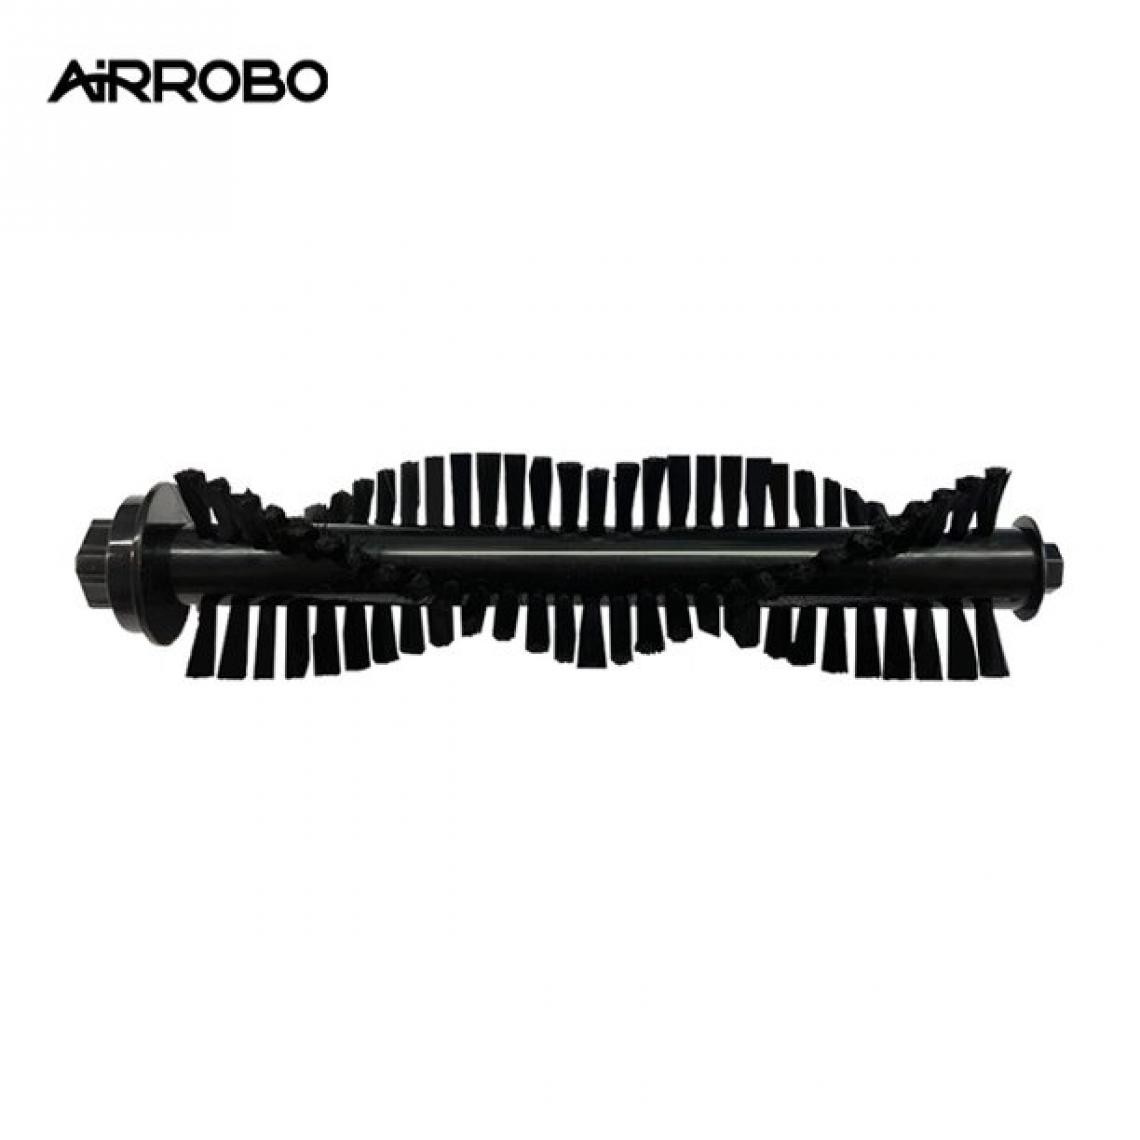 AIRROBO - Brosse Principal Original pour AIRROBO P10 - Accessoire entretien des sols